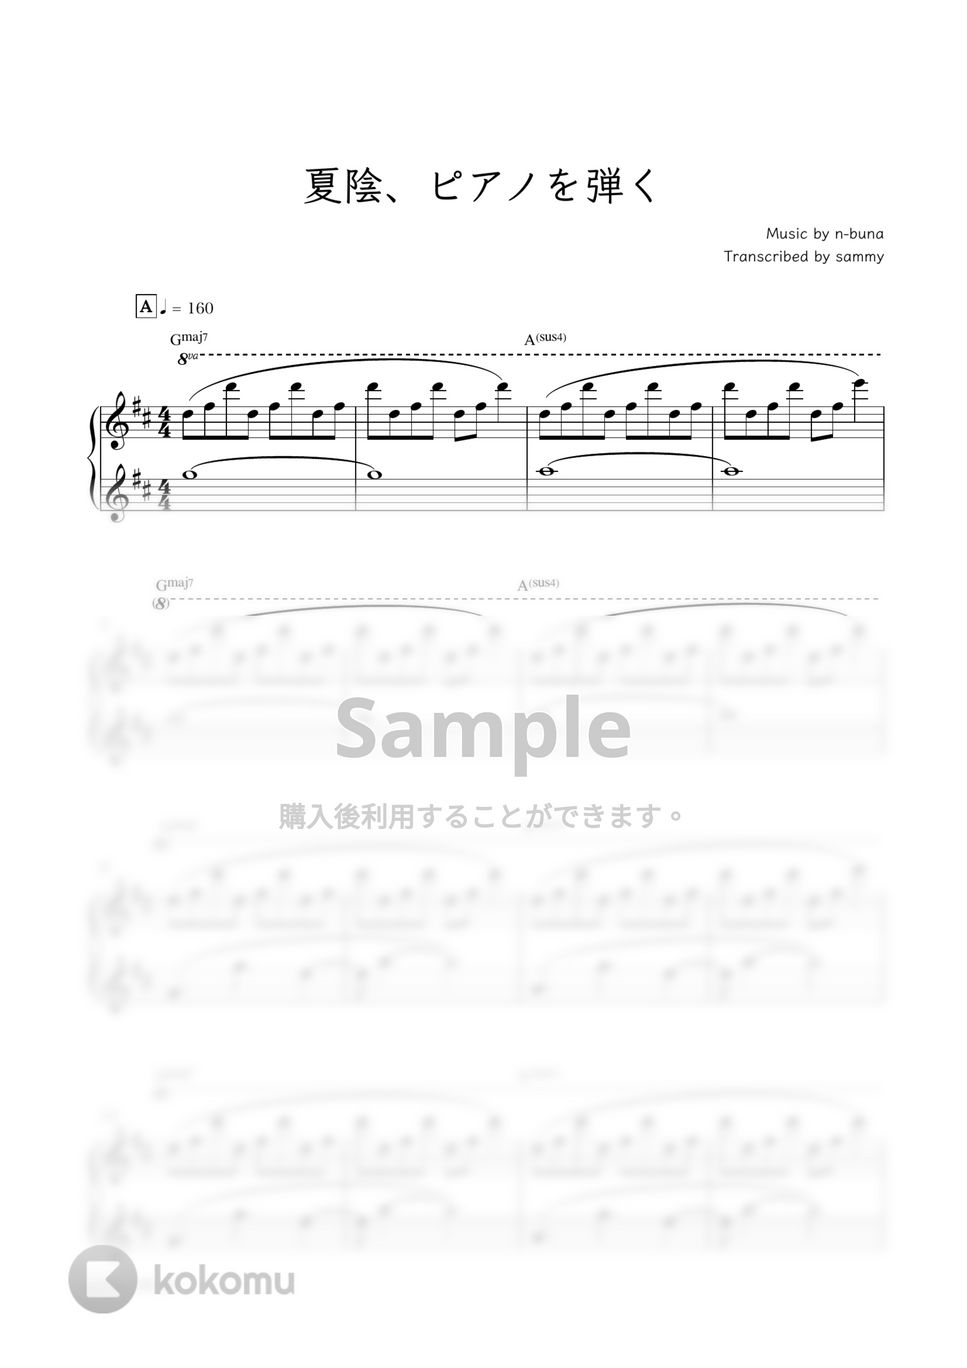 ヨルシカ - 夏陰、ピアノを弾く by sammy